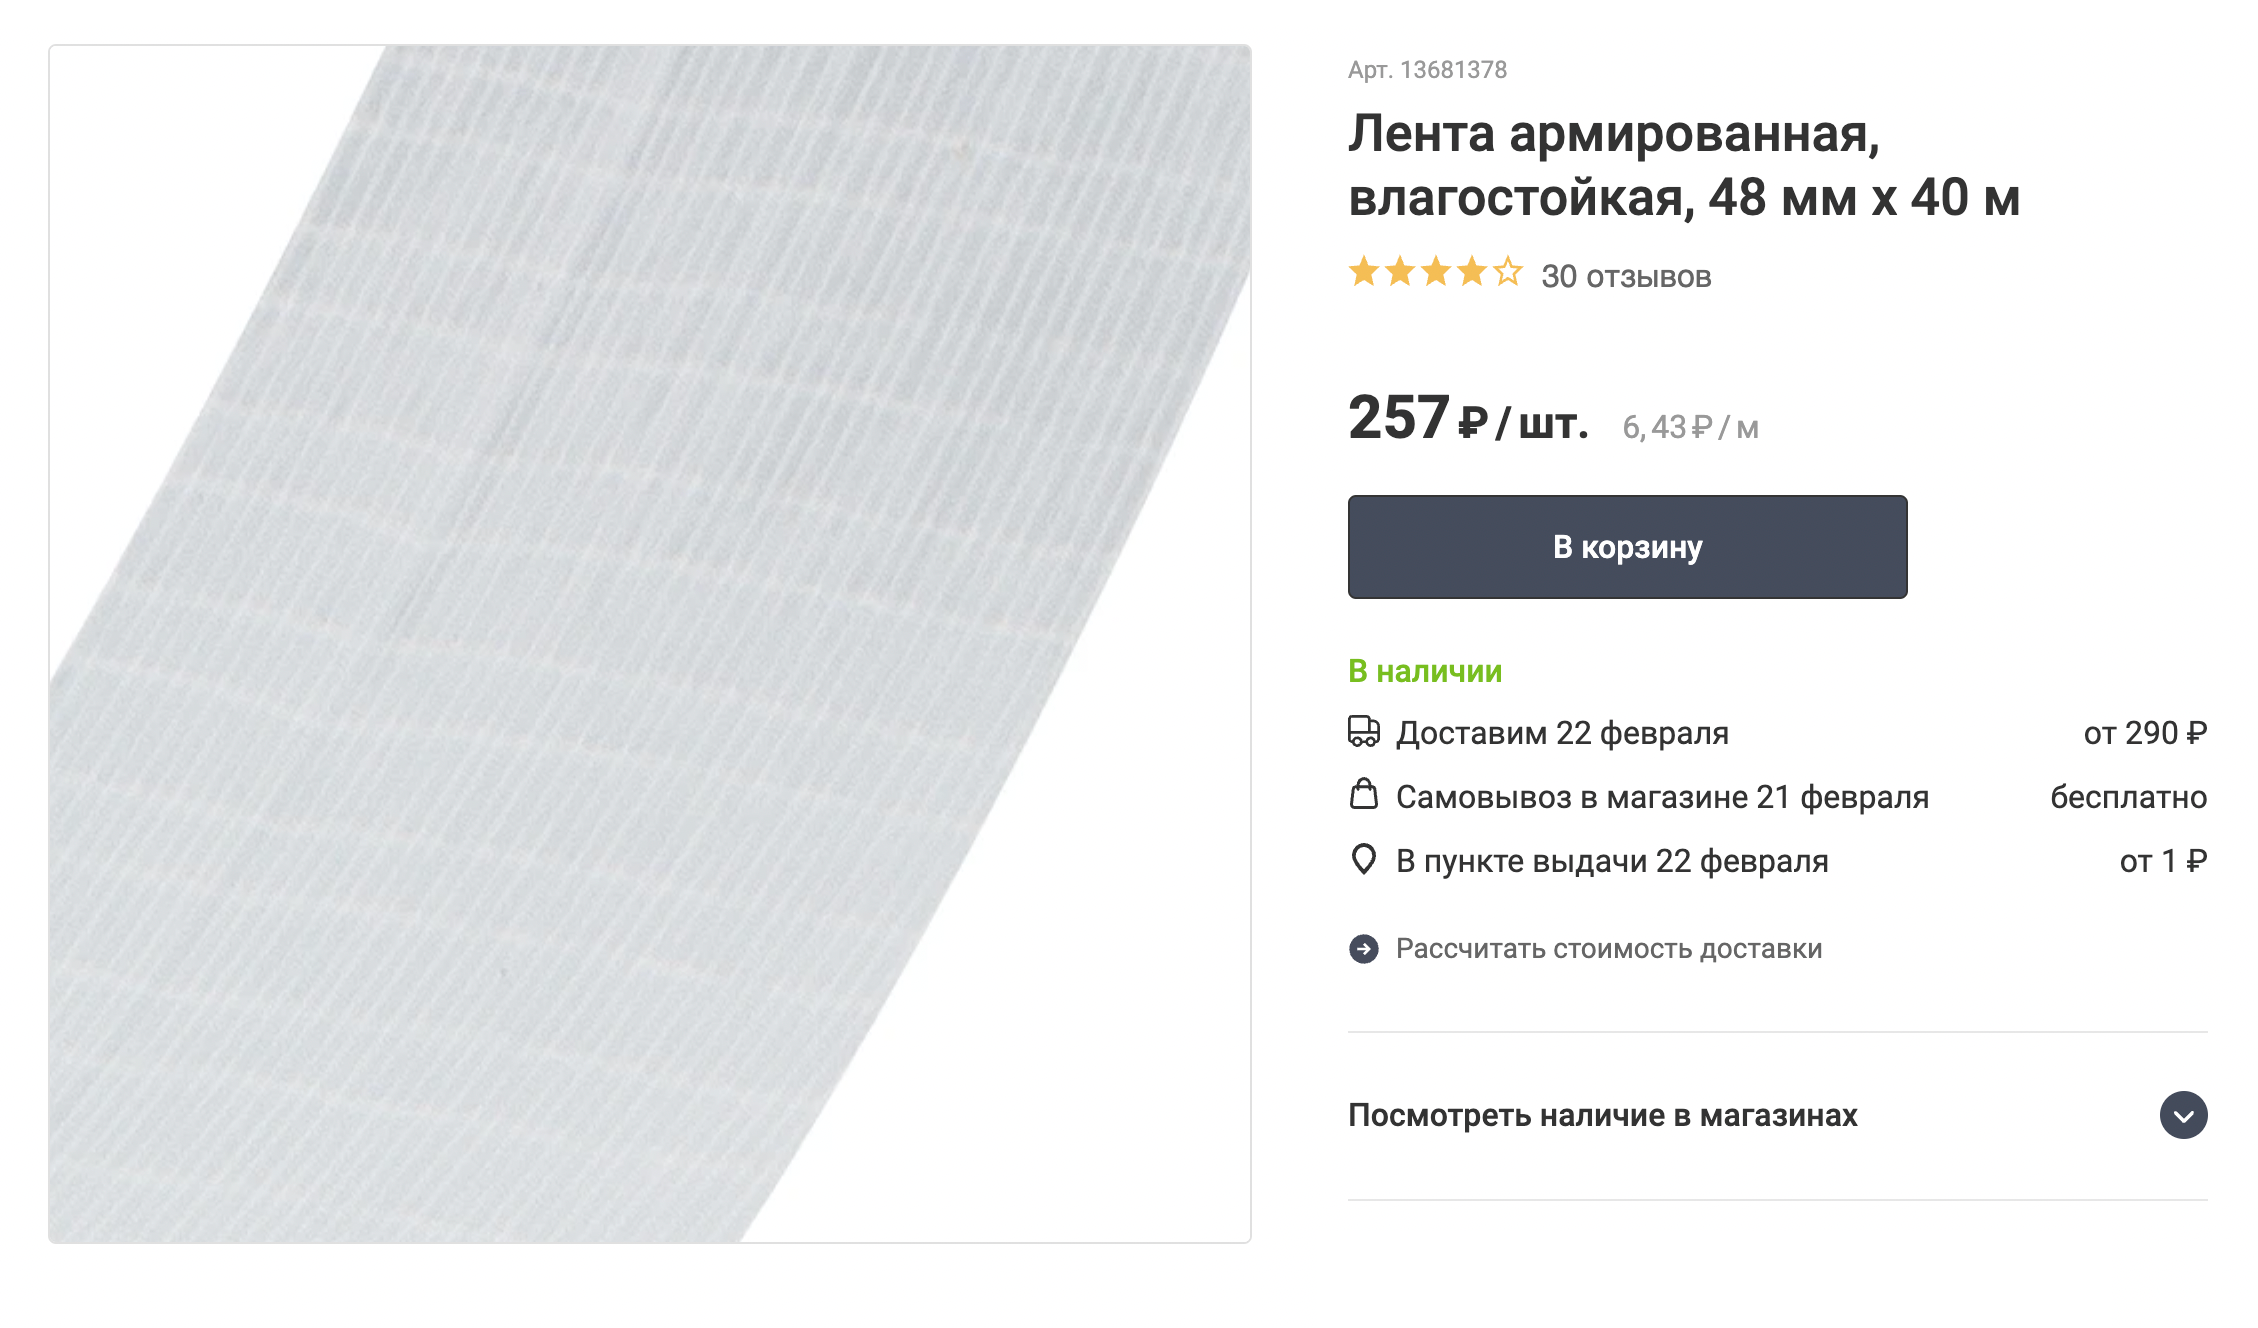 Армированная лента — что⁠-⁠то вроде клейкой строительной марли, которая не пропускает влагу. Источник: leroymerlin.ru